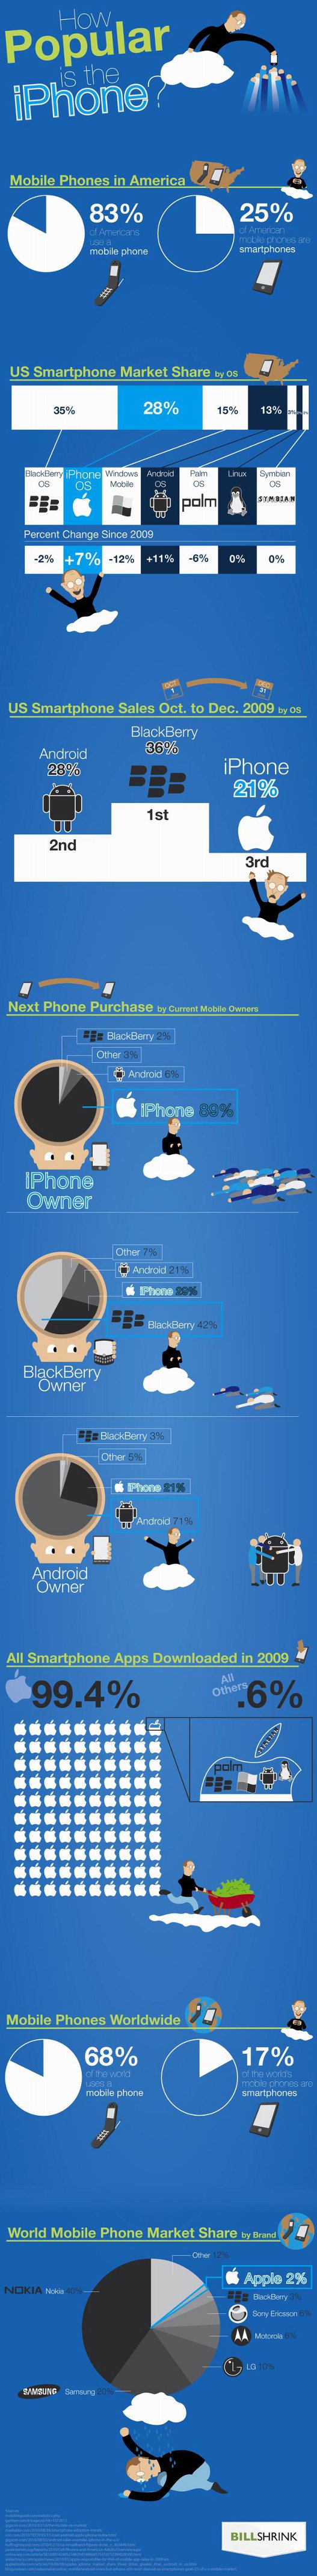 iPhone_infographic